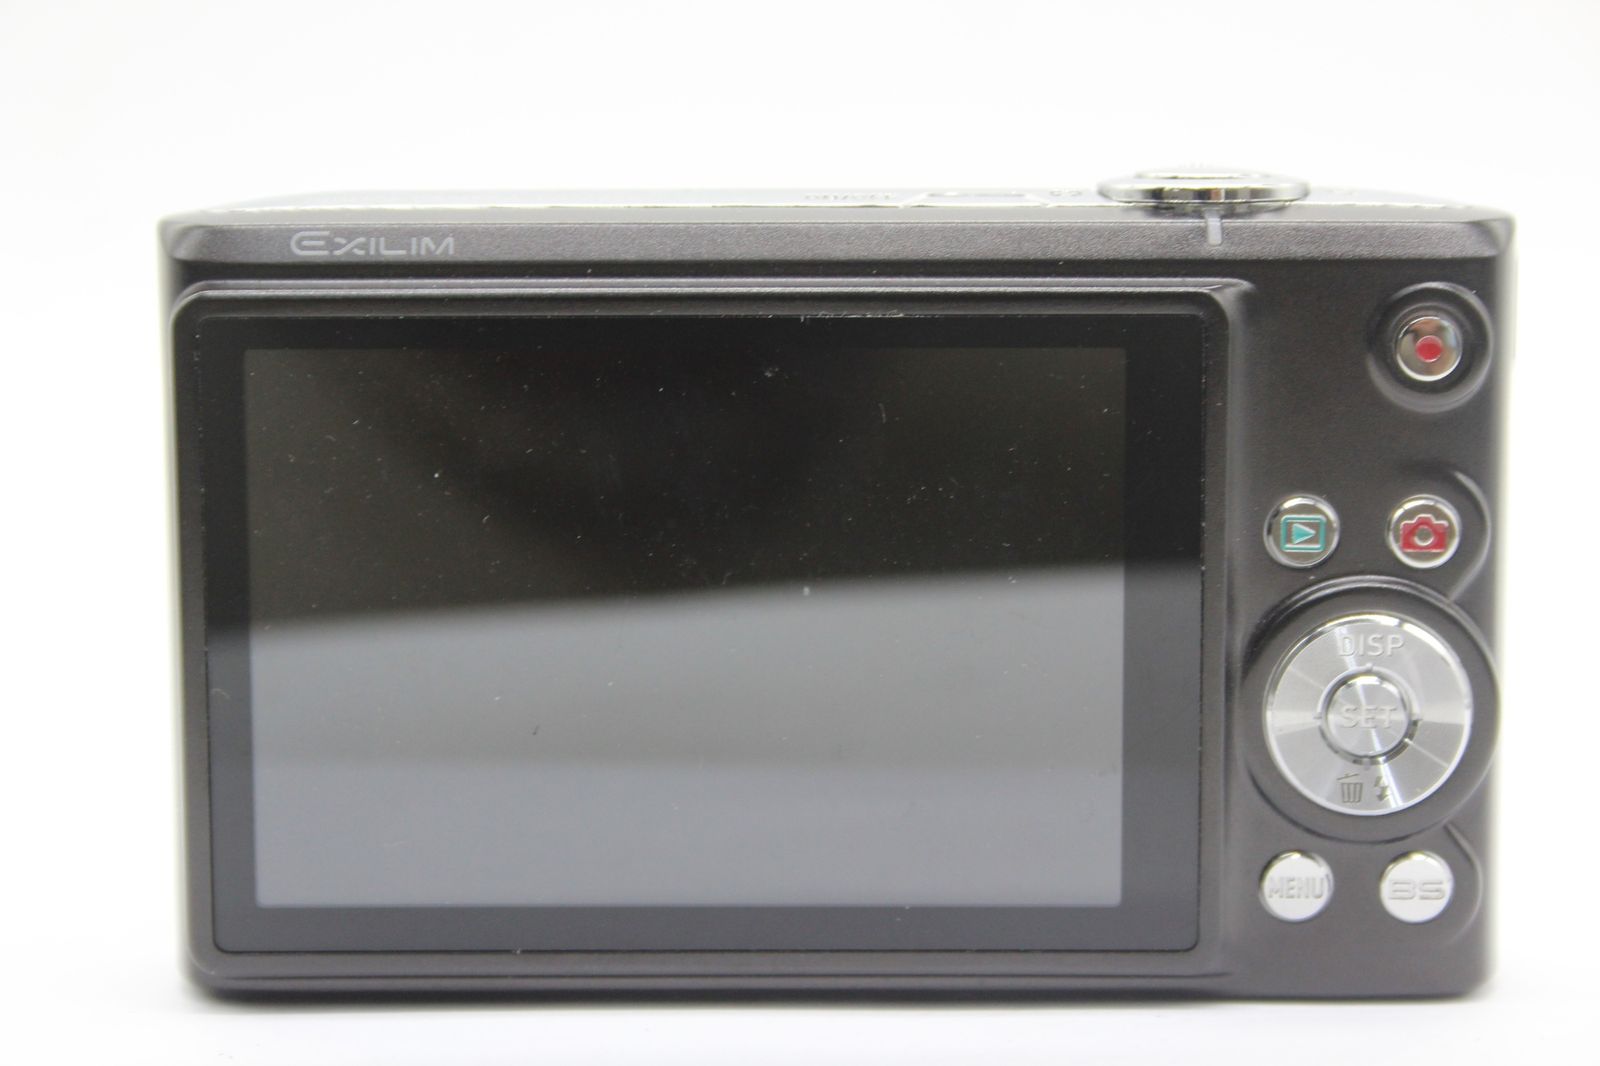 【返品保証】 カシオ Casio Exilim EX-Z200 ブラック 4x バッテリー付き コンパクトデジタルカメラ s8861